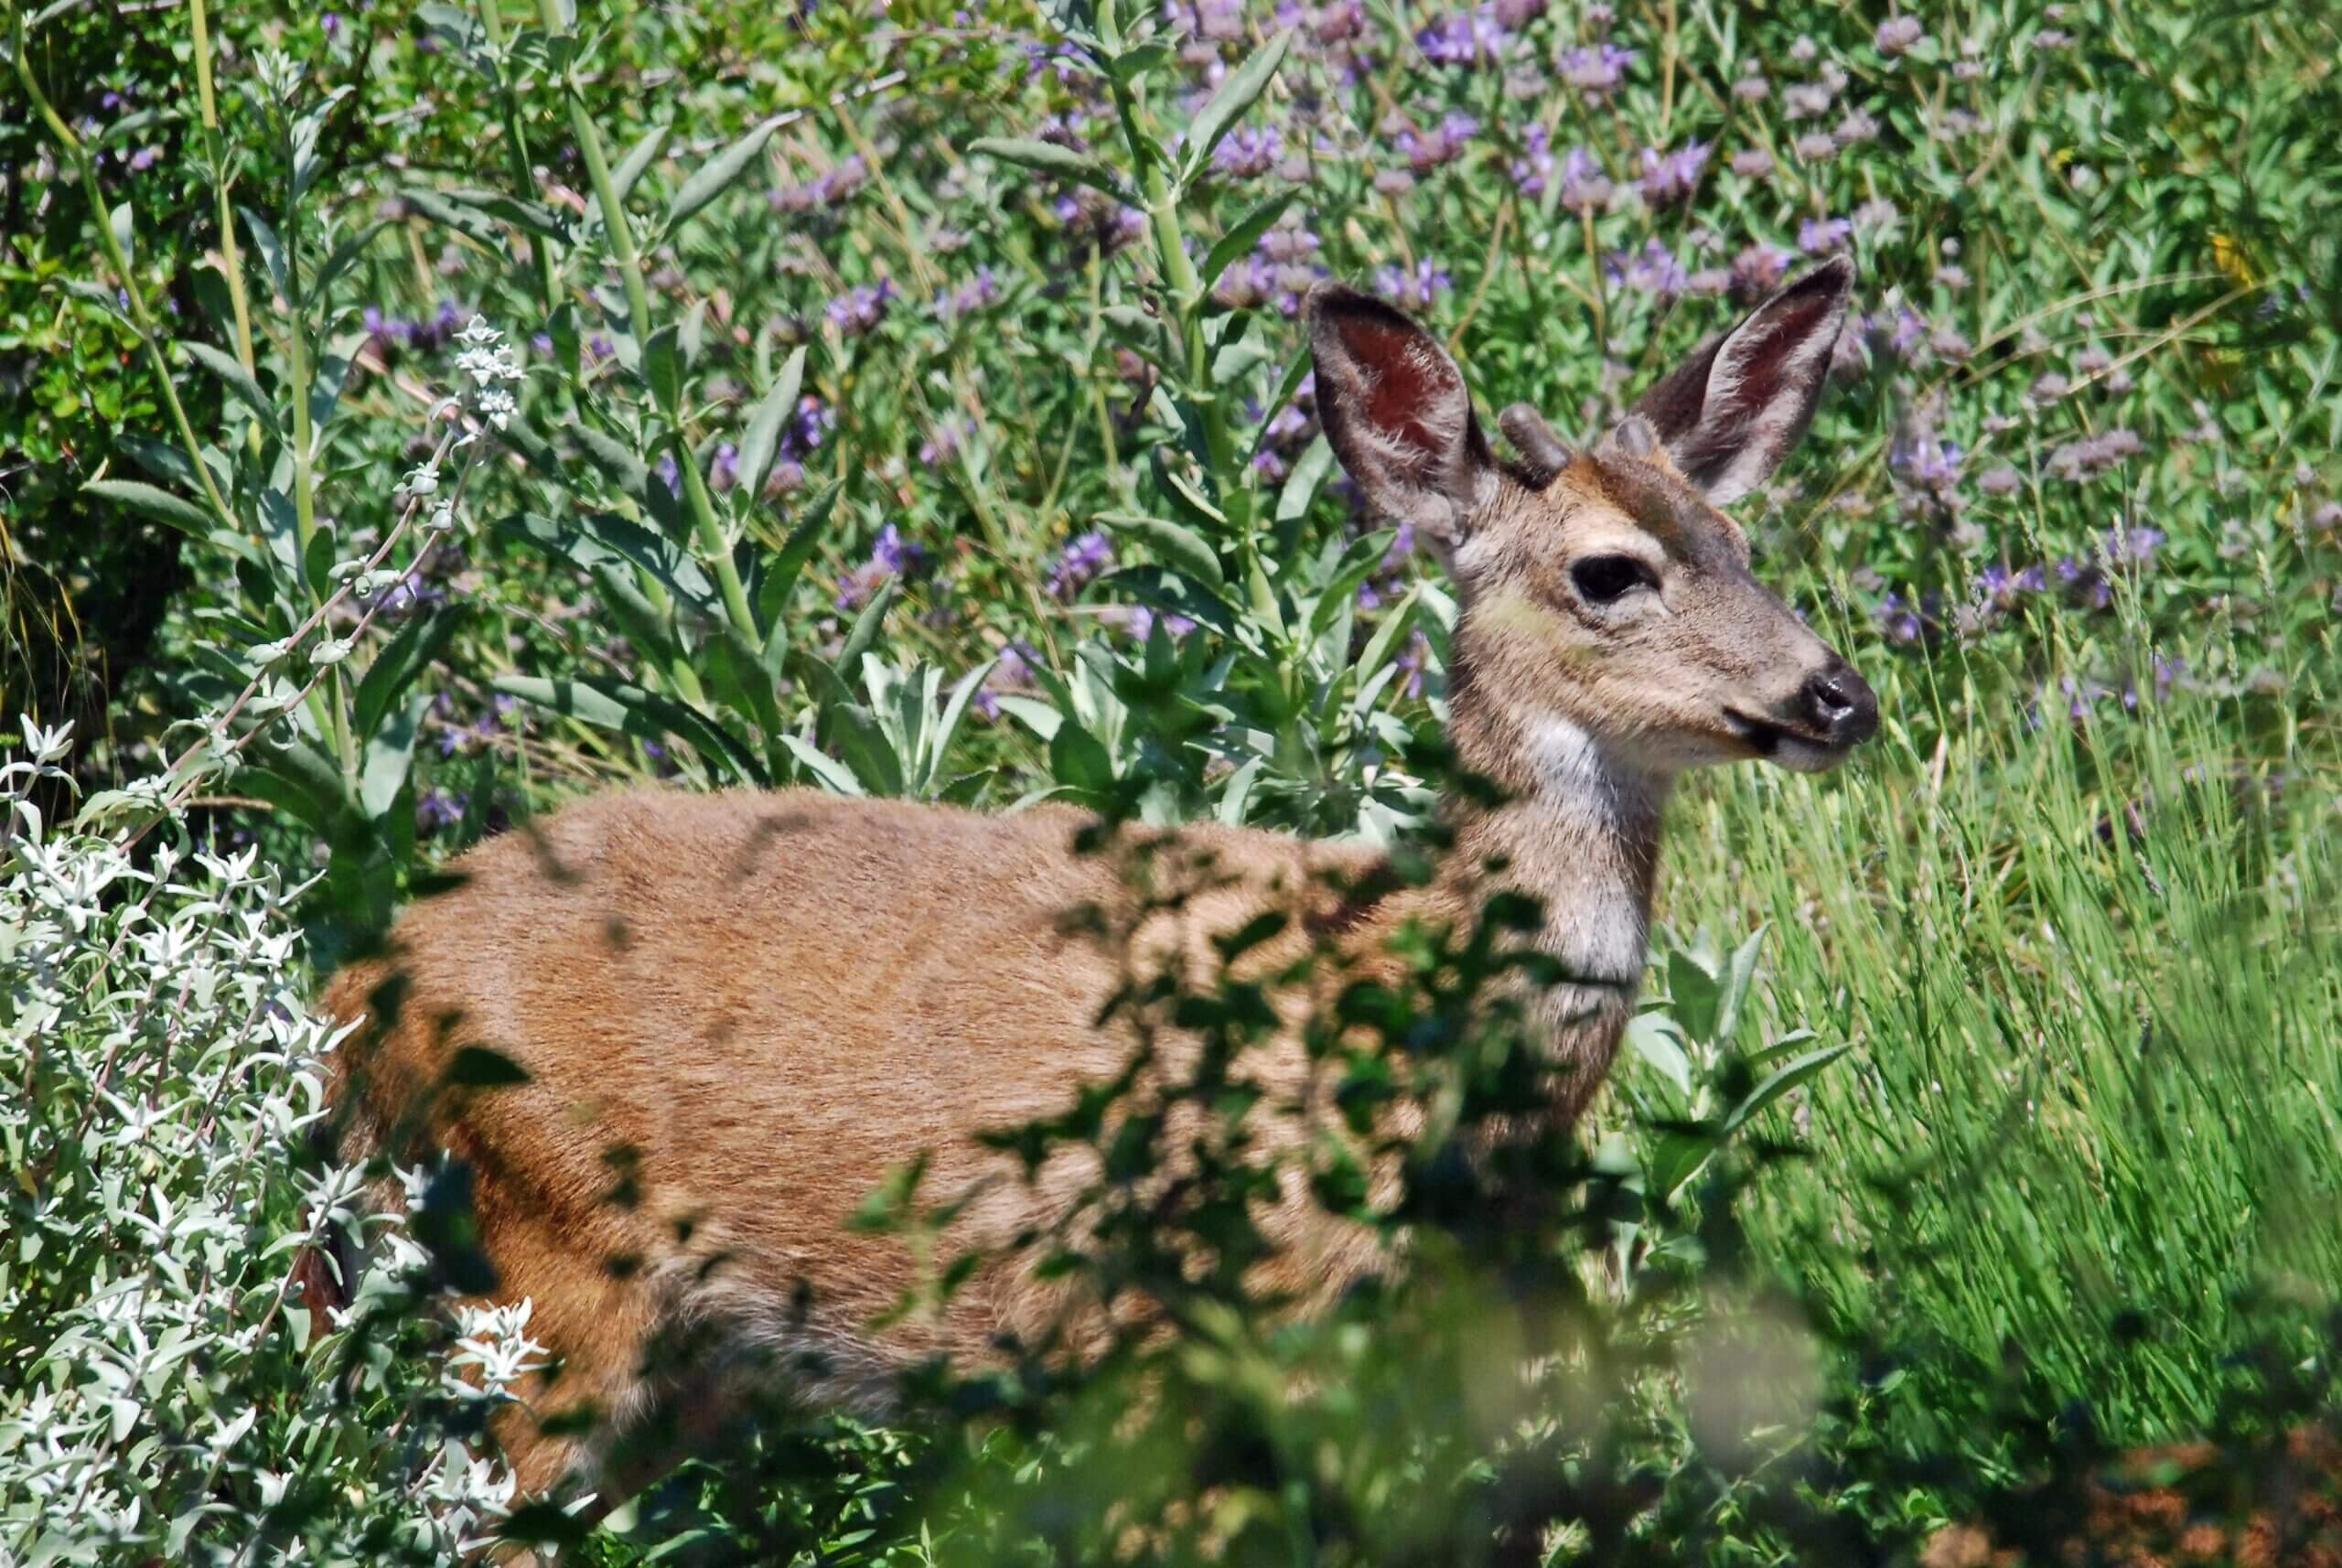 A young buck among Salvias in the garden.